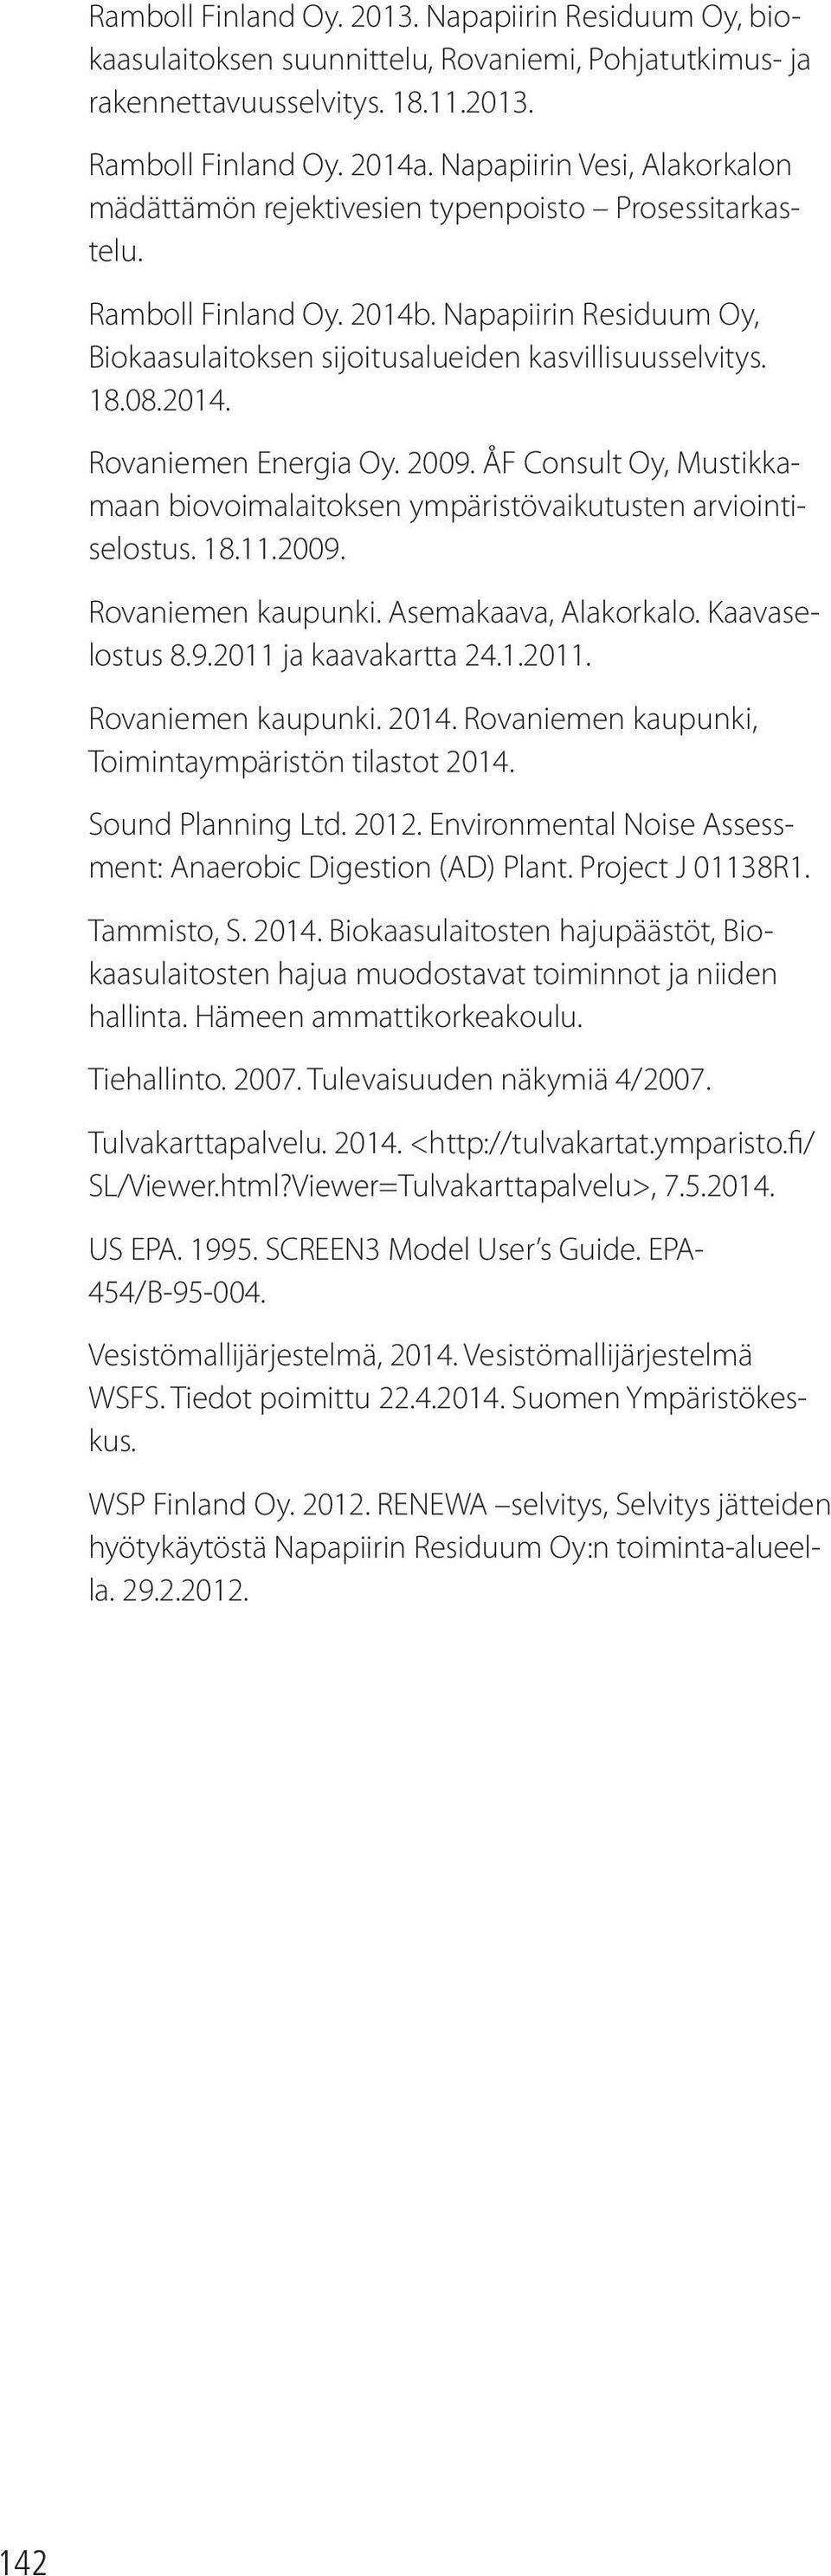 2014. Rovaniemen Energia Oy. 2009. ÅF Consult Oy, Mustikkamaan biovoimalaitoksen ympäristövaikutusten arviointiselostus. 18.11.2009. Rovaniemen kaupunki. Asemakaava, Alakorkalo. Kaavaselostus 8.9.2011 ja kaavakartta 24.